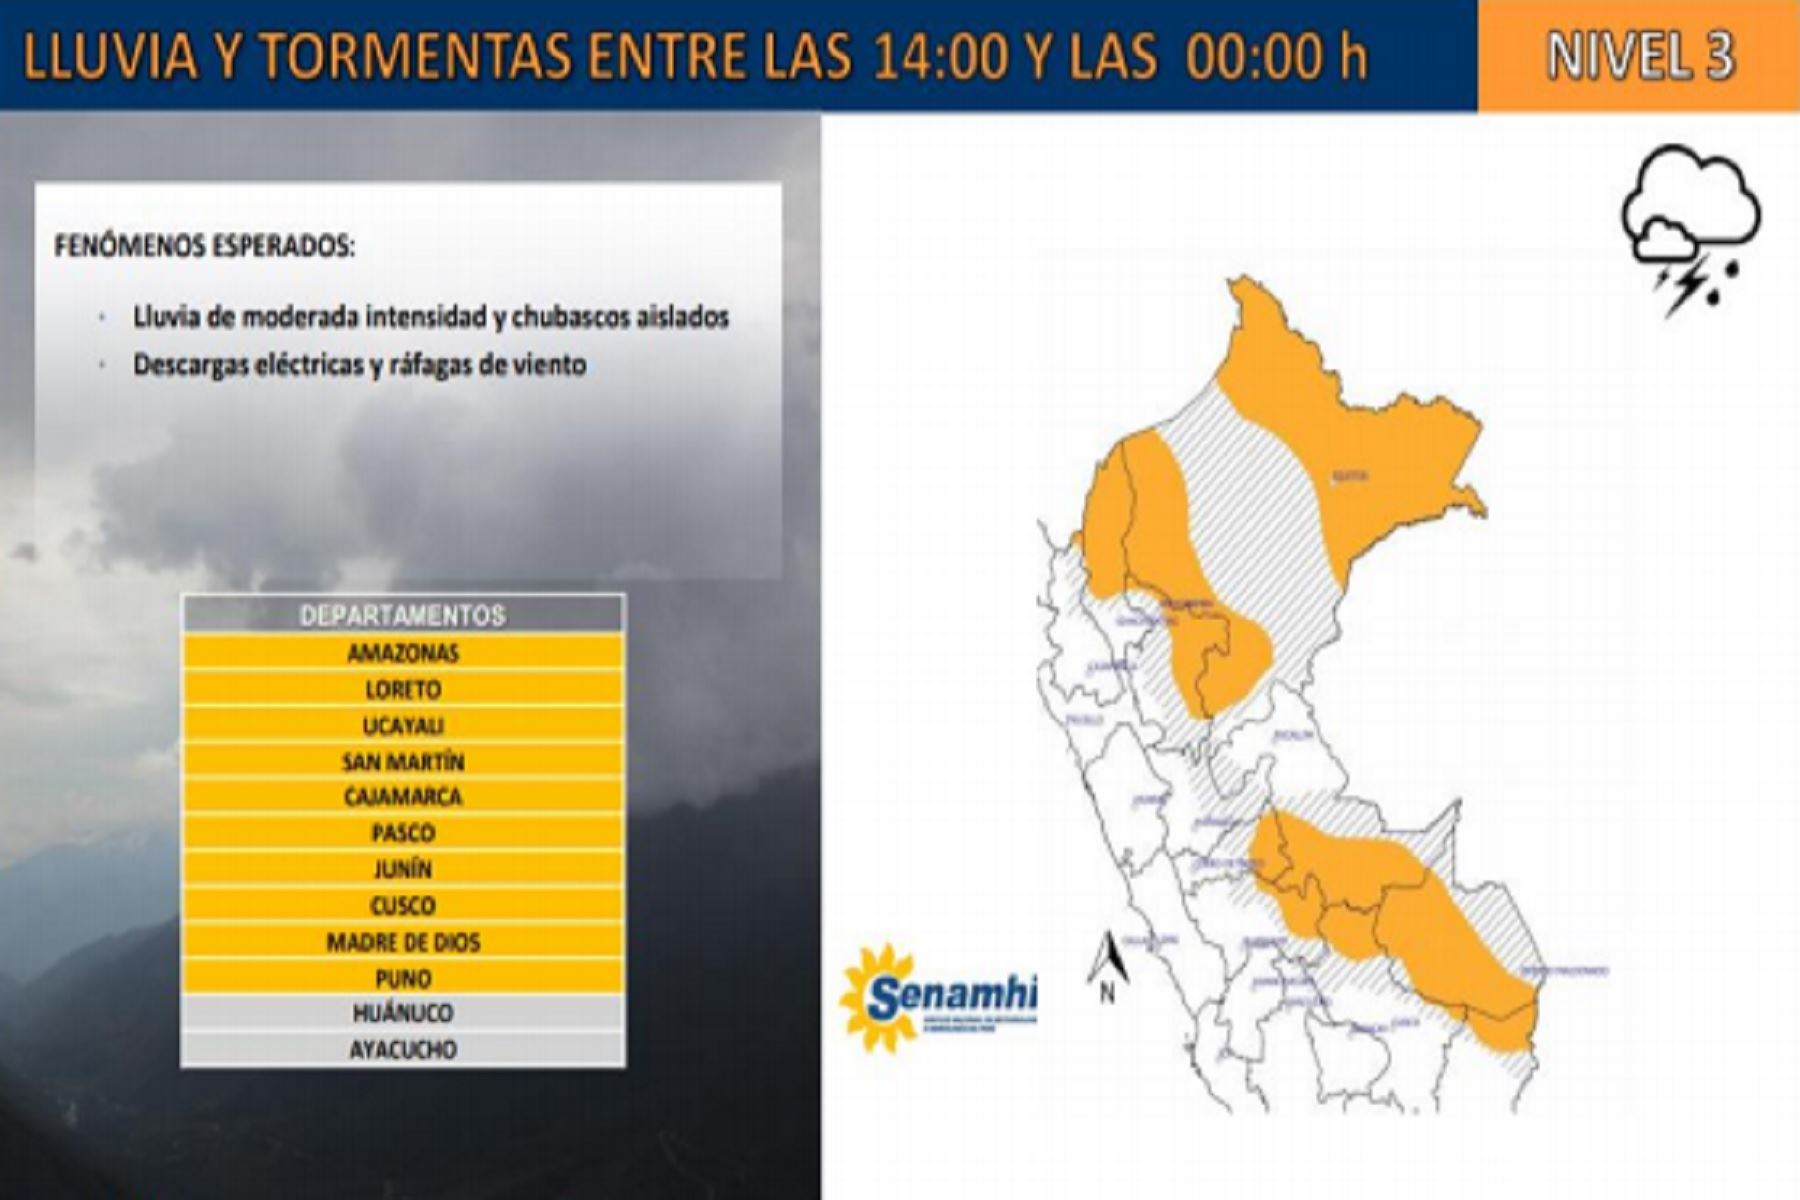 lluvias moderadas y chubascos aislados se vienen presentando desde las 14:00 horas de hoy en diez regiones del país,